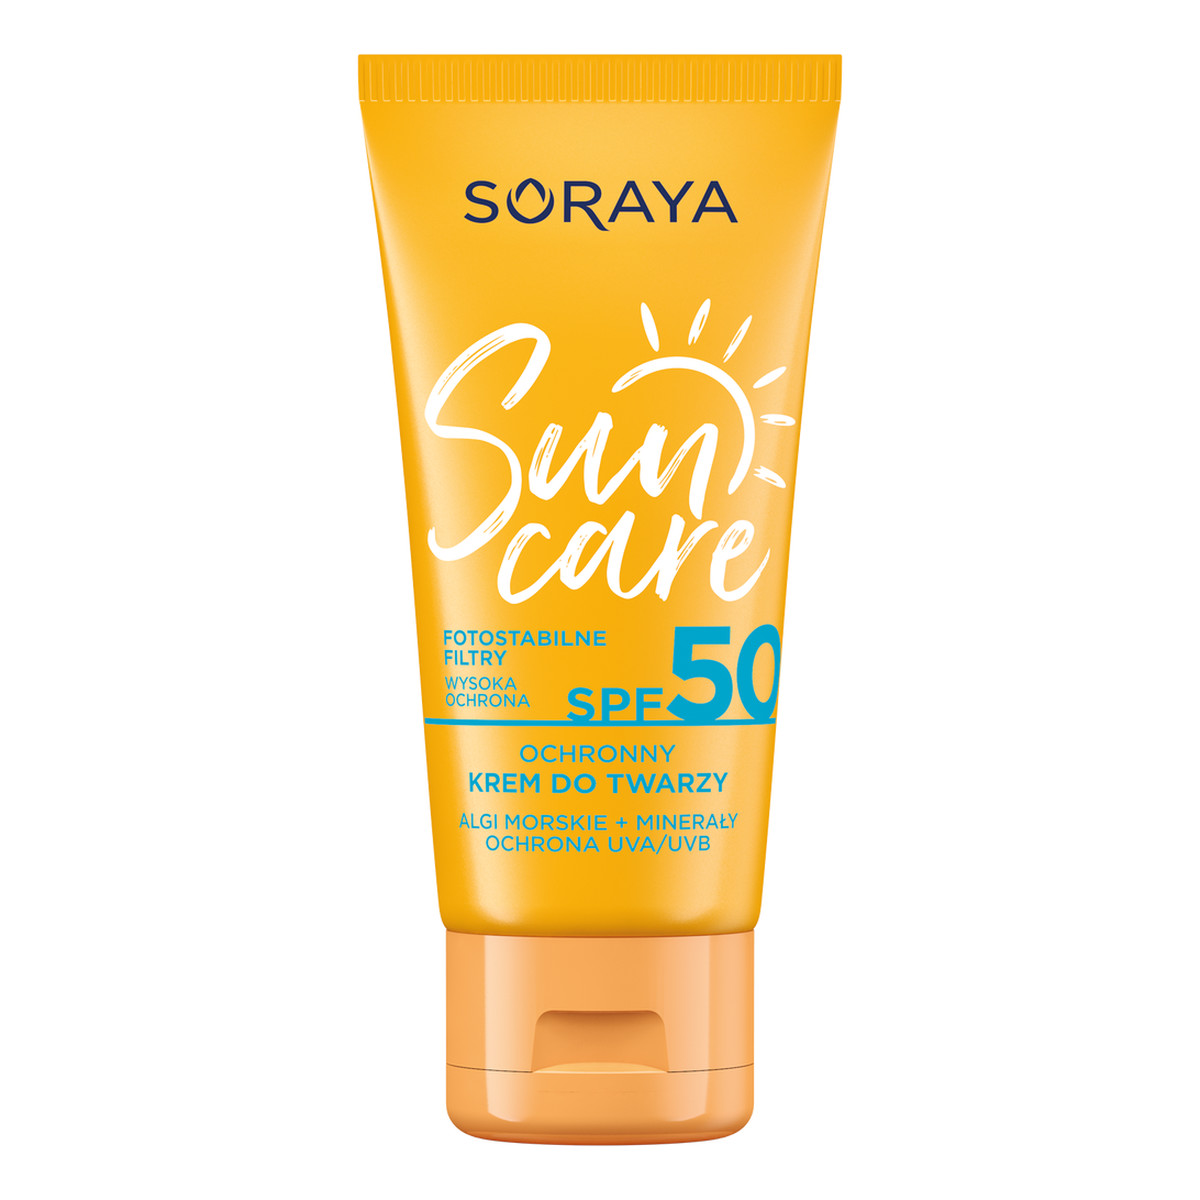 Soraya Sun Care SPF 50 Ochronny krem do twarzy 50ml